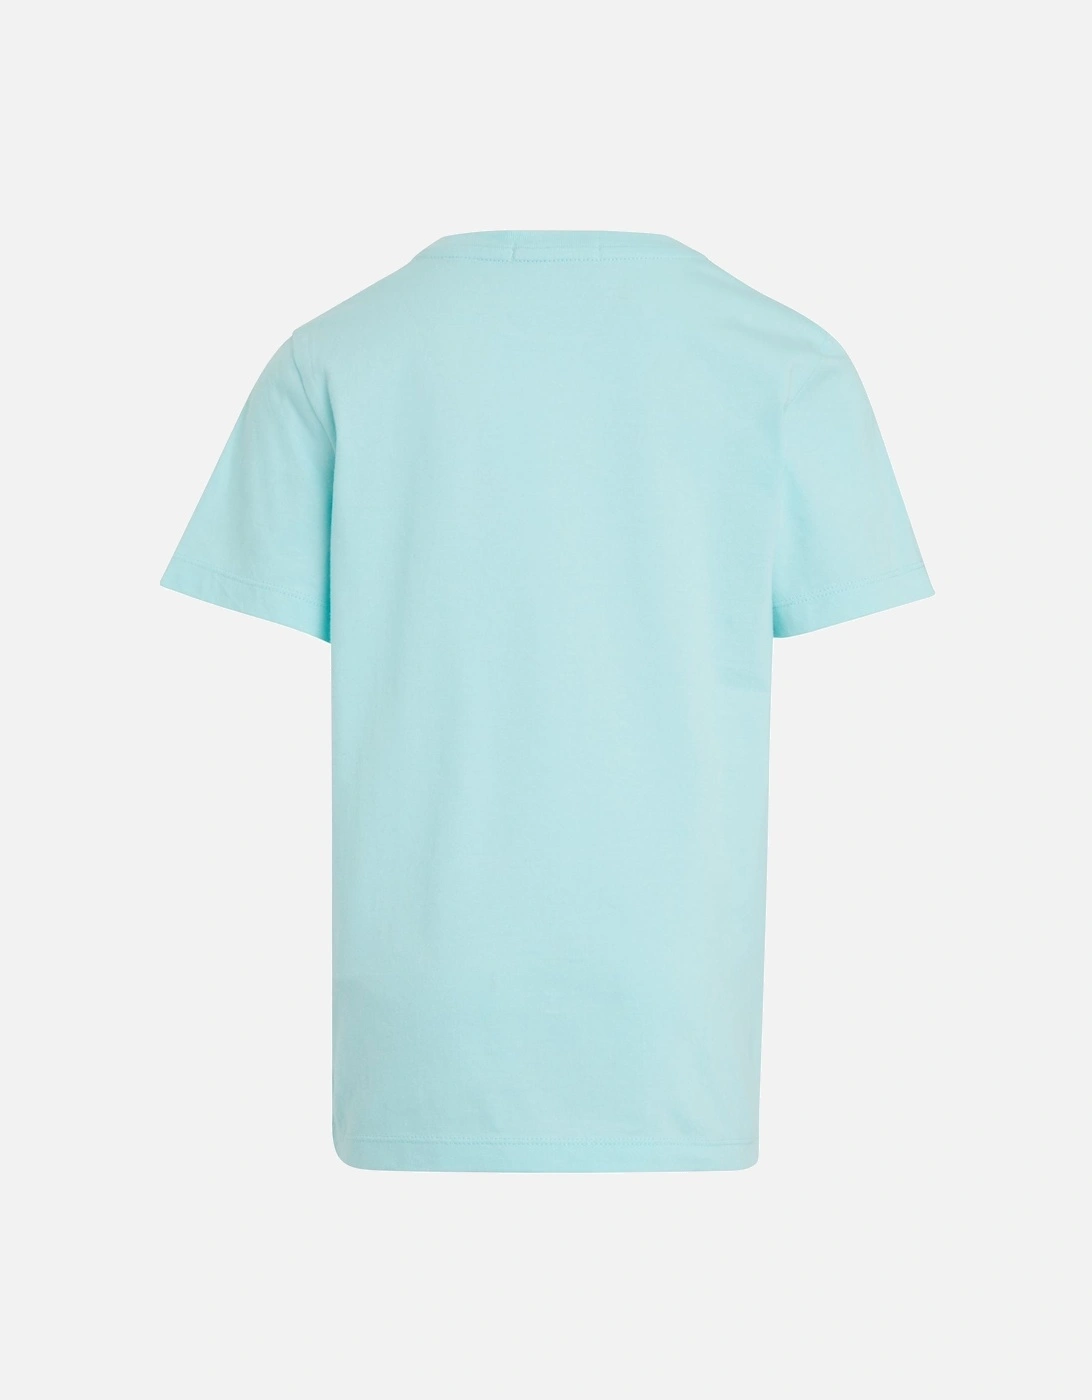 Mint Blue T shirt